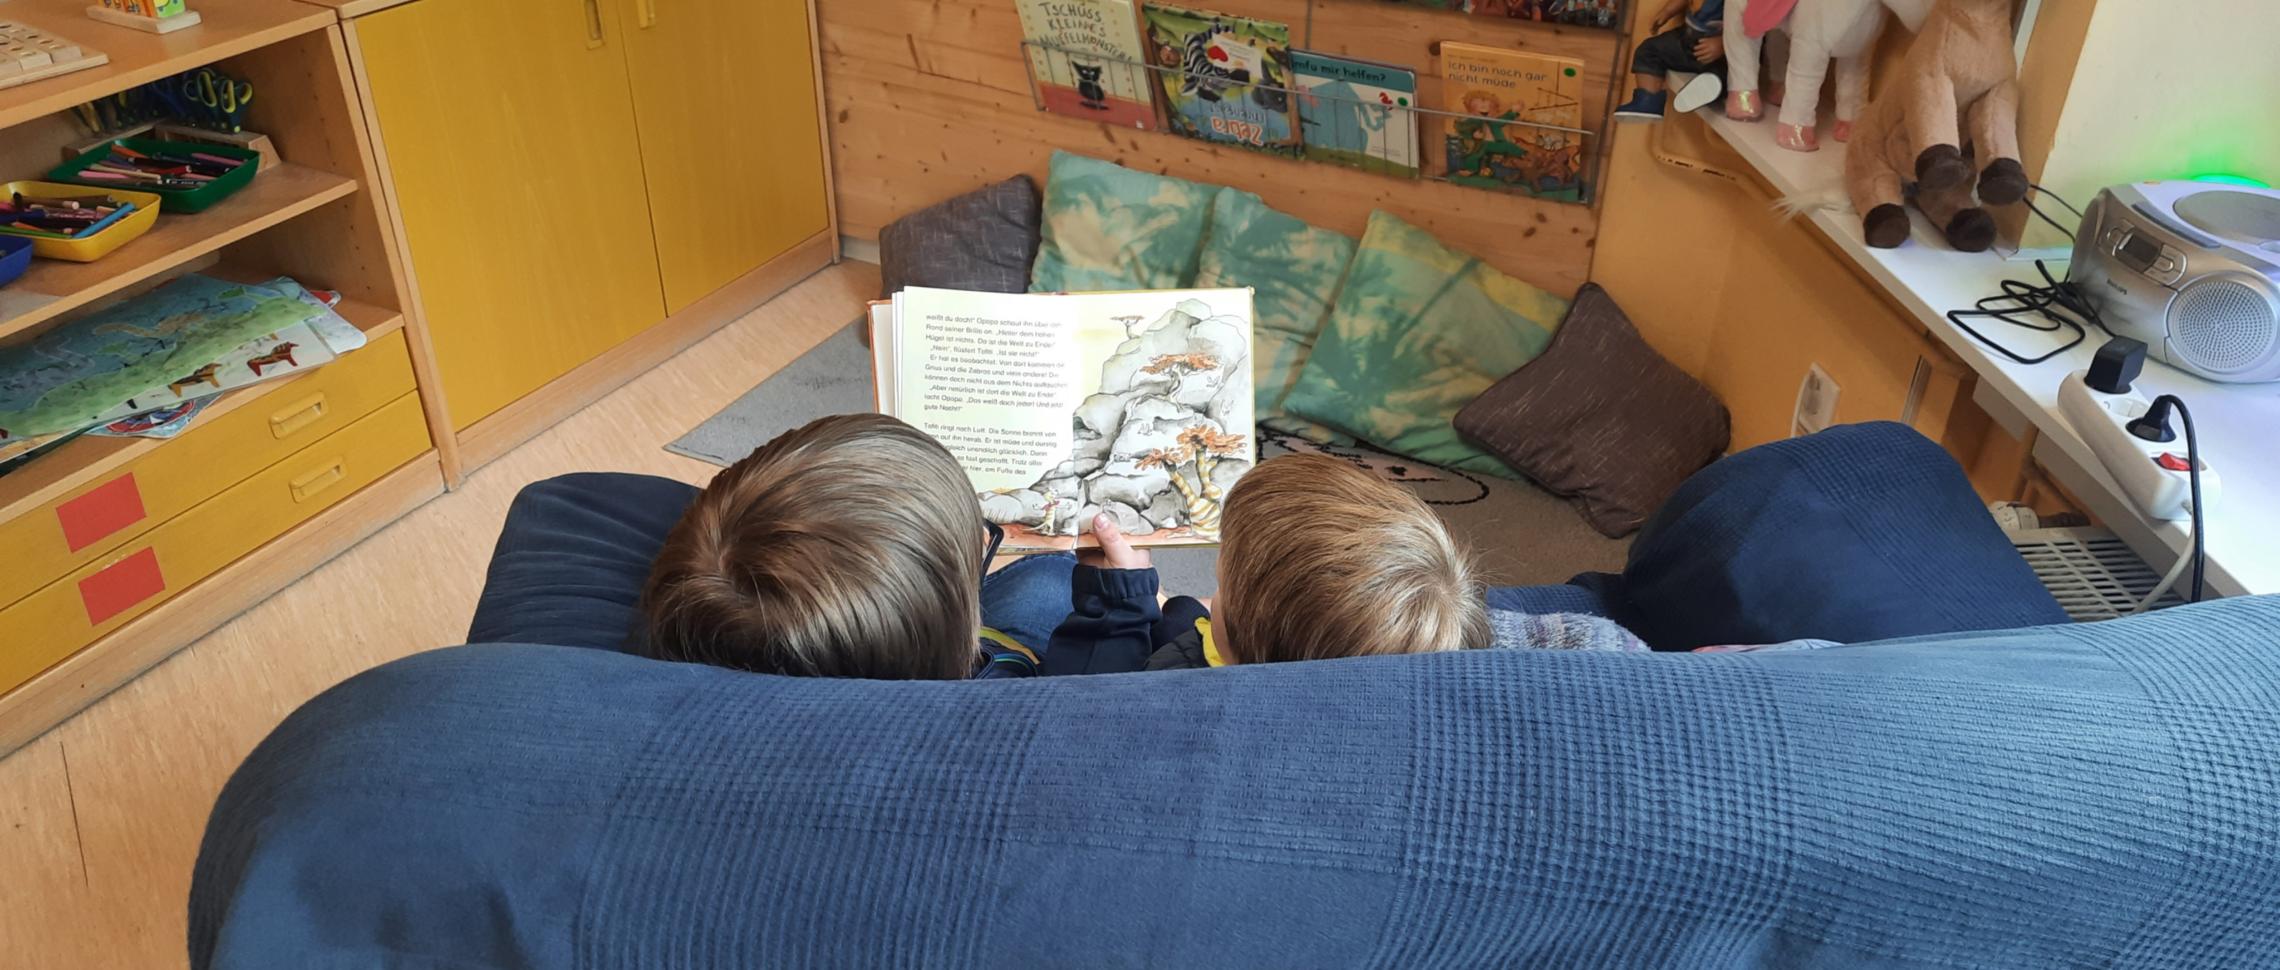 zwei lesende Kinder auf Couch